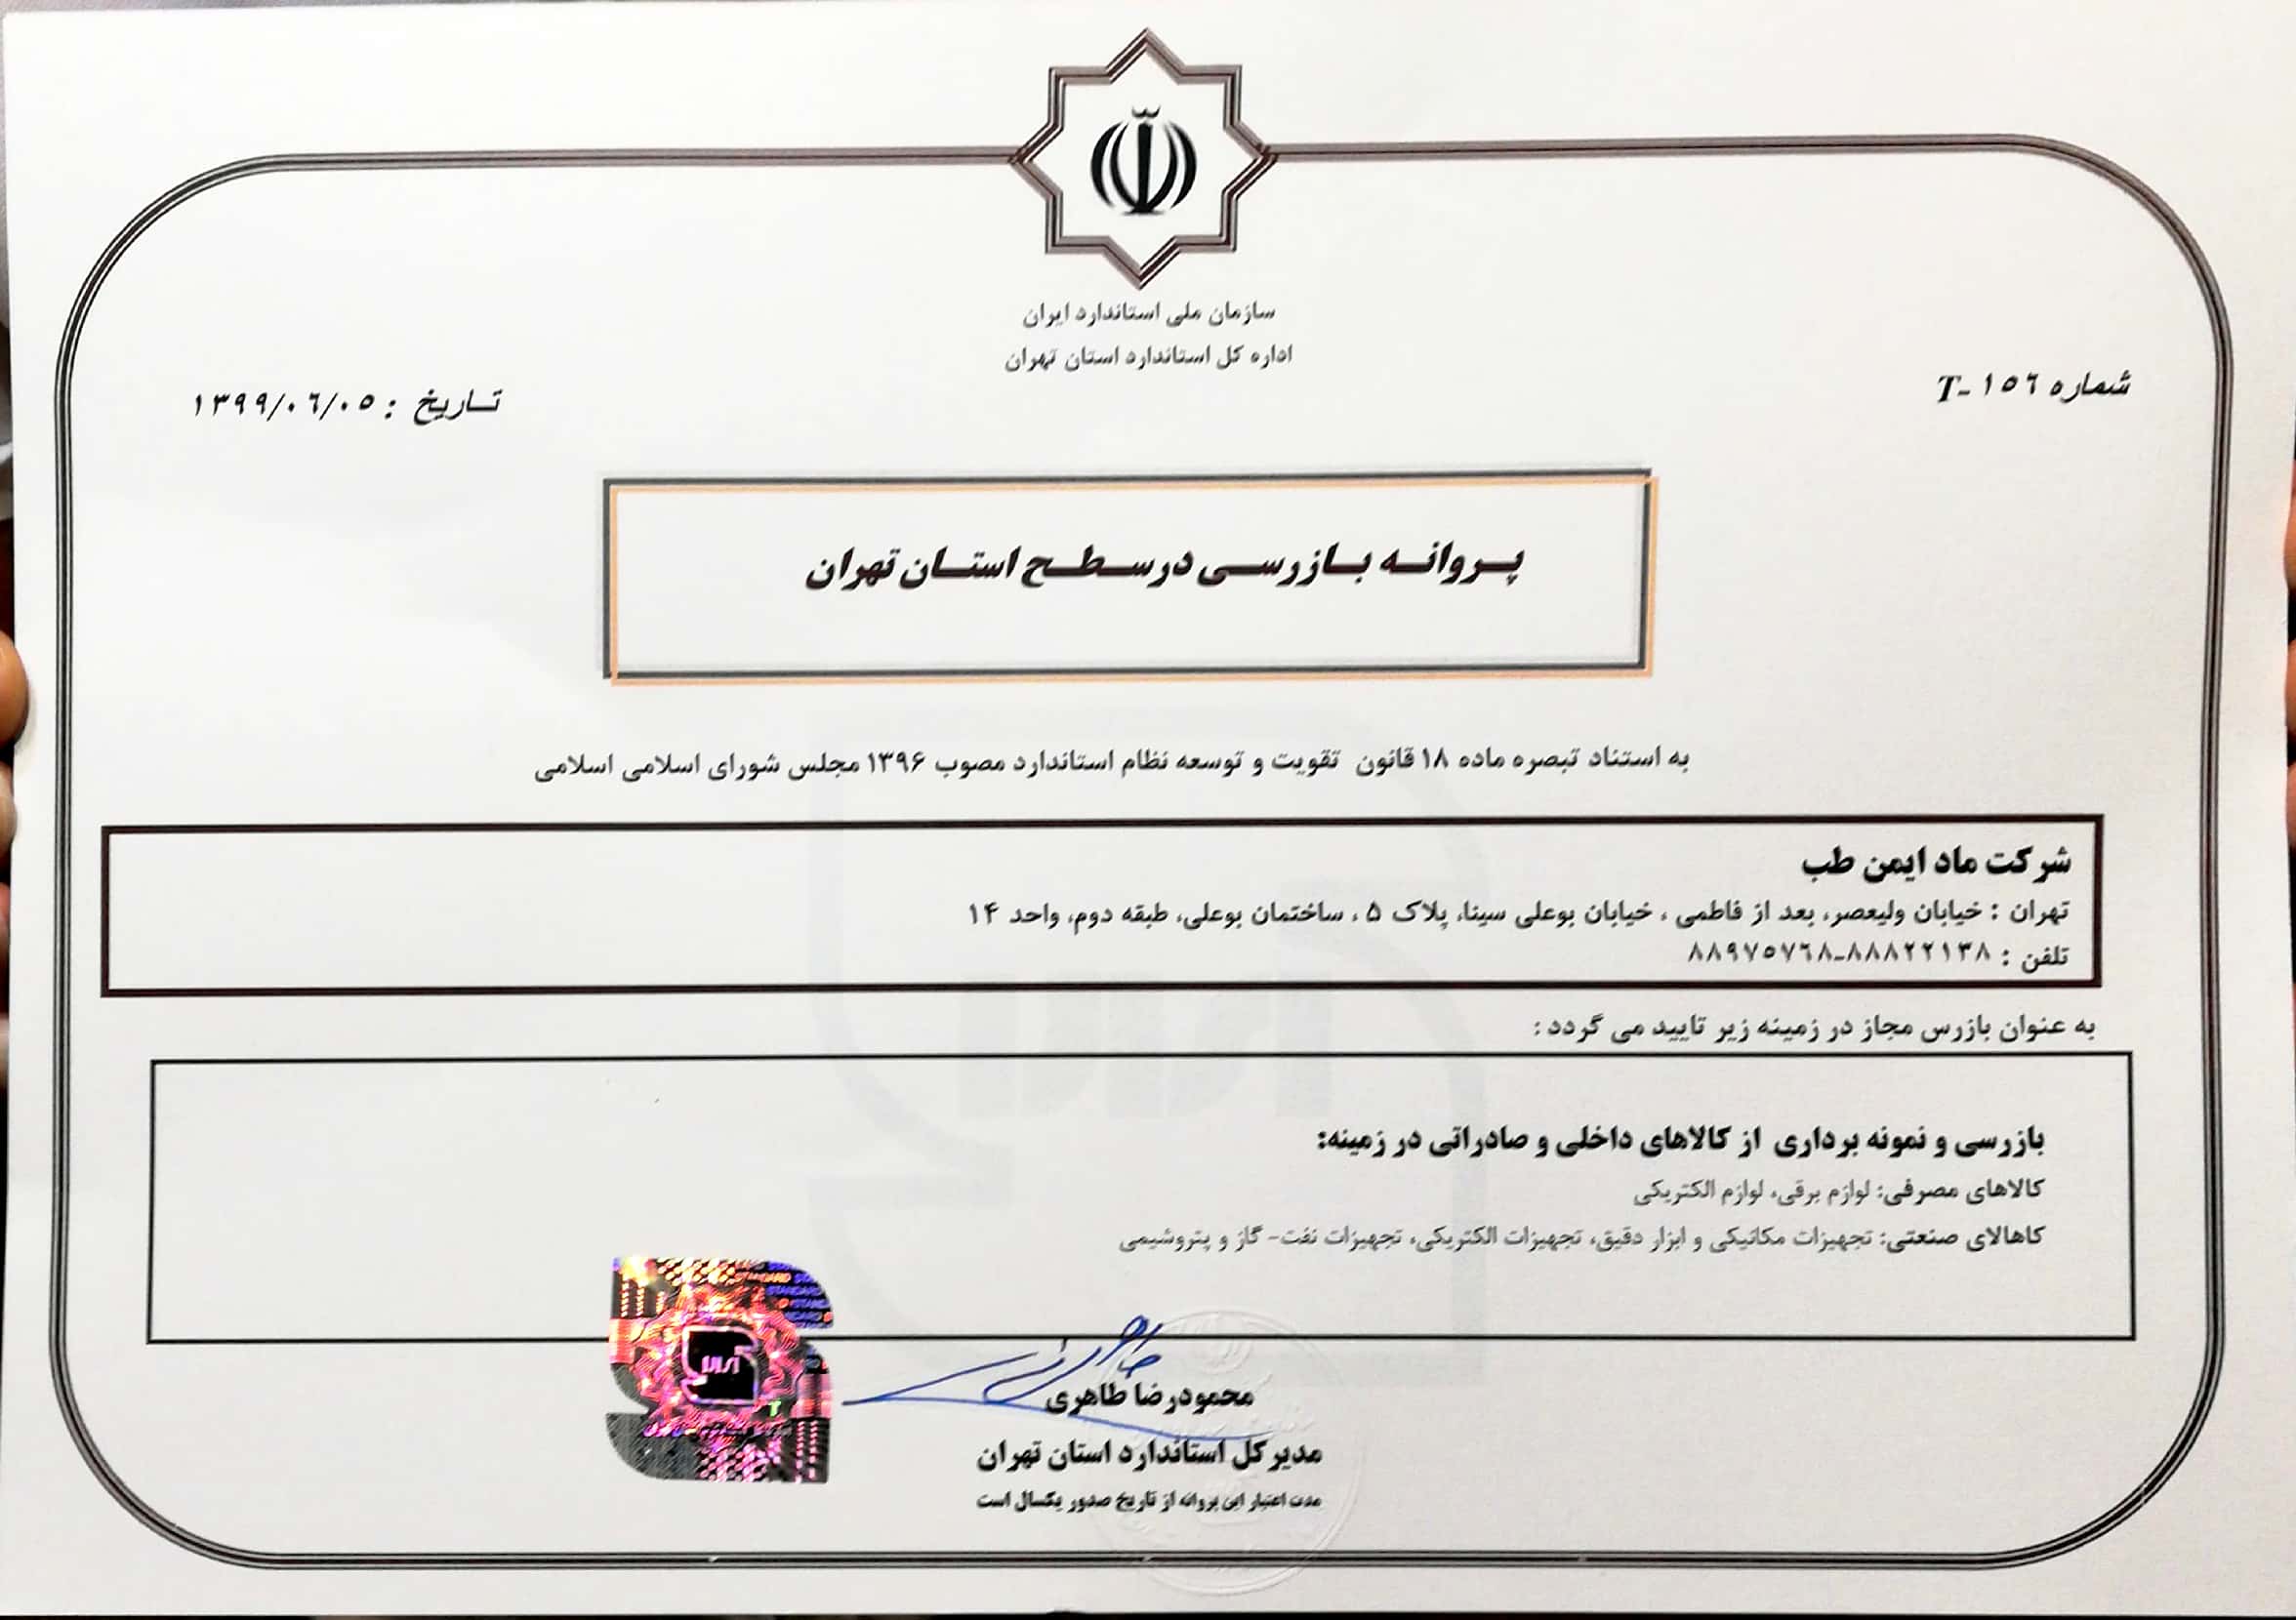 مادکو - مجوز بازرسی کالا از اداره استاندارد ایران